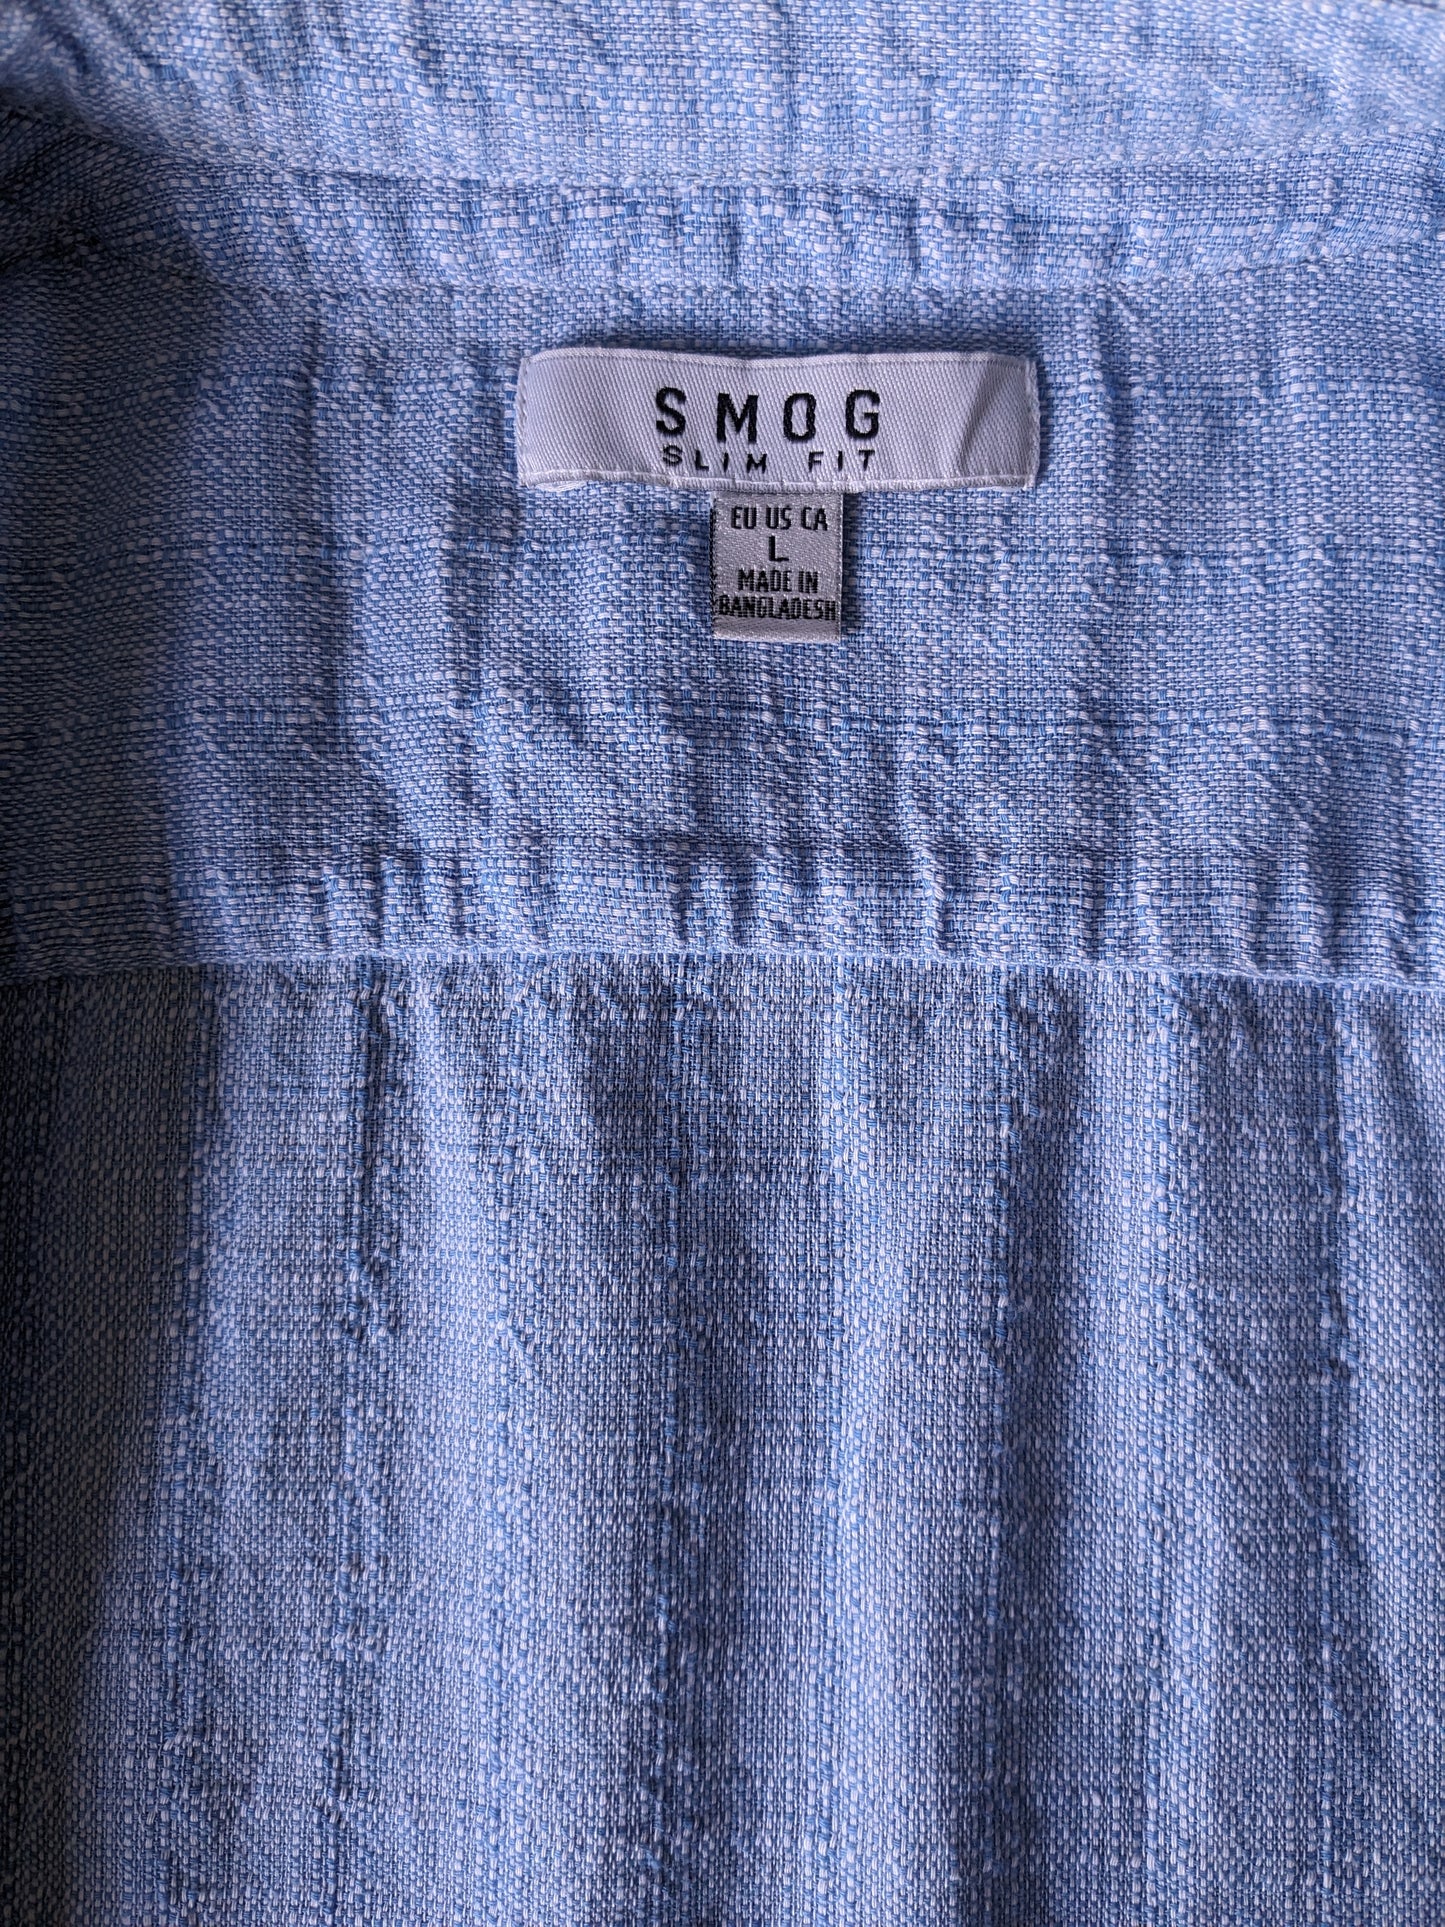 Camicia da smog con MAO / agricoltori / collare verticale. Blu misto. Dimensione L. slim fit.